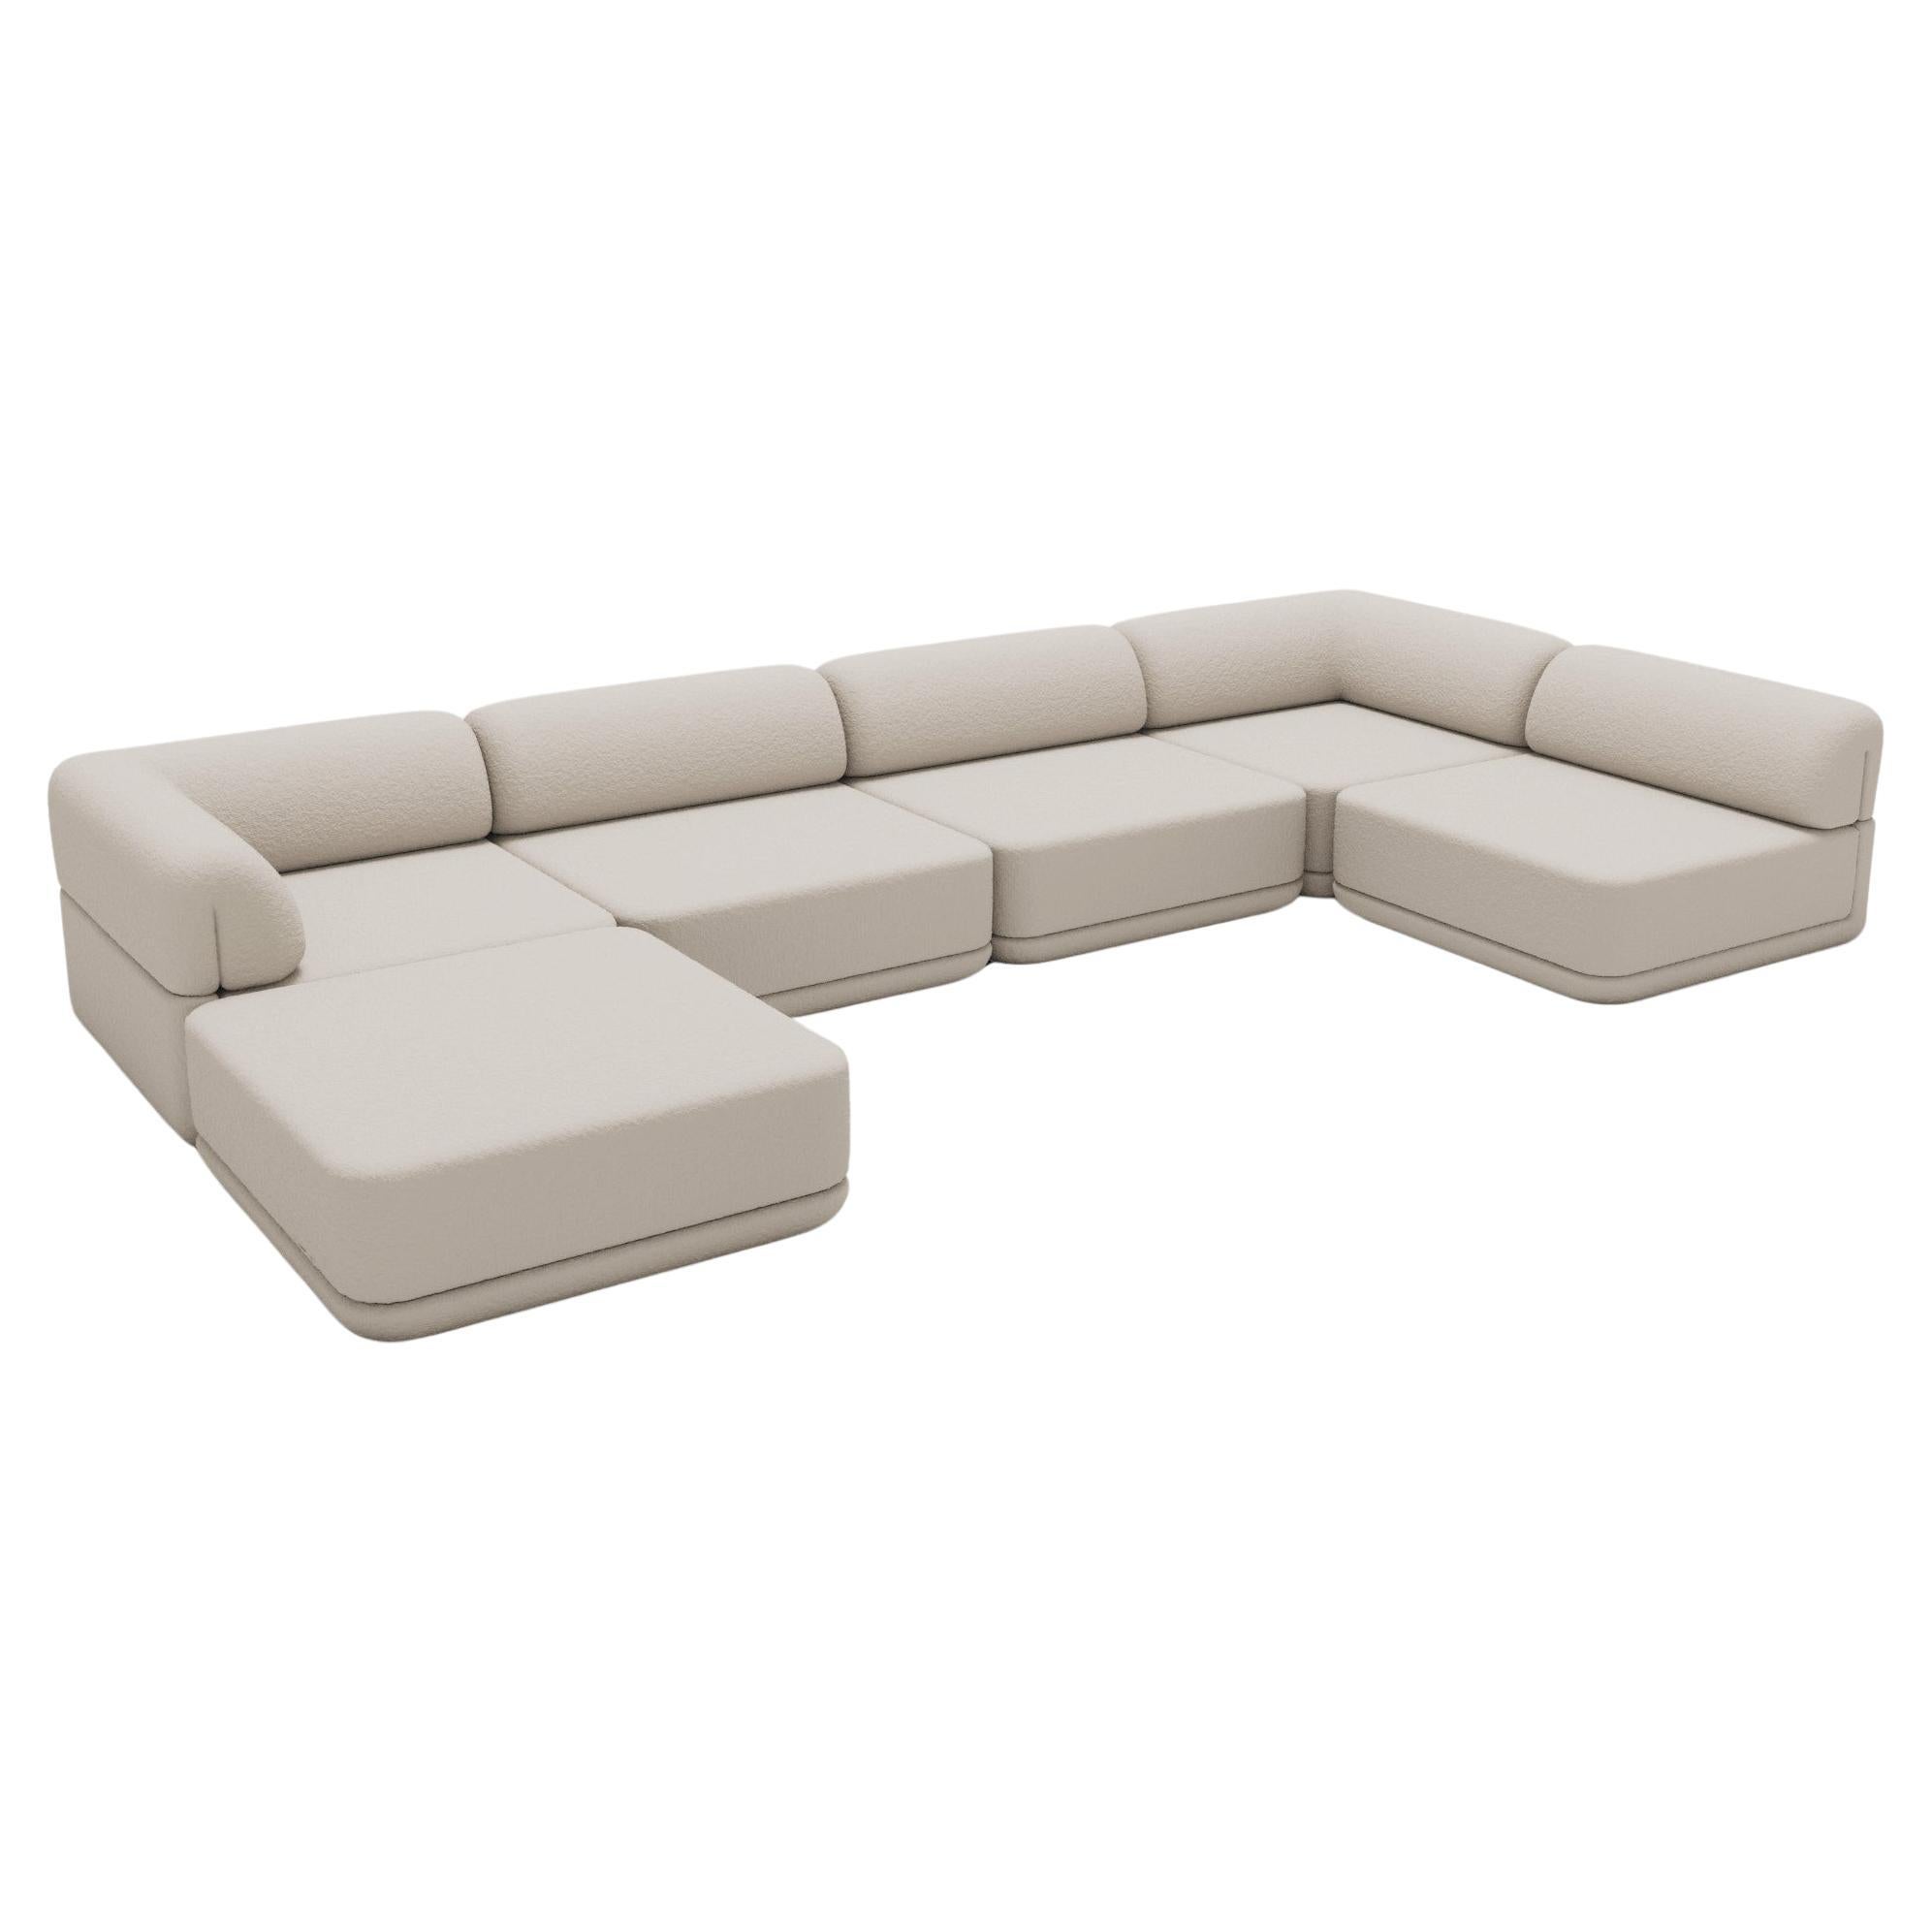 Le canapé cube - Lounge Sectional en vente